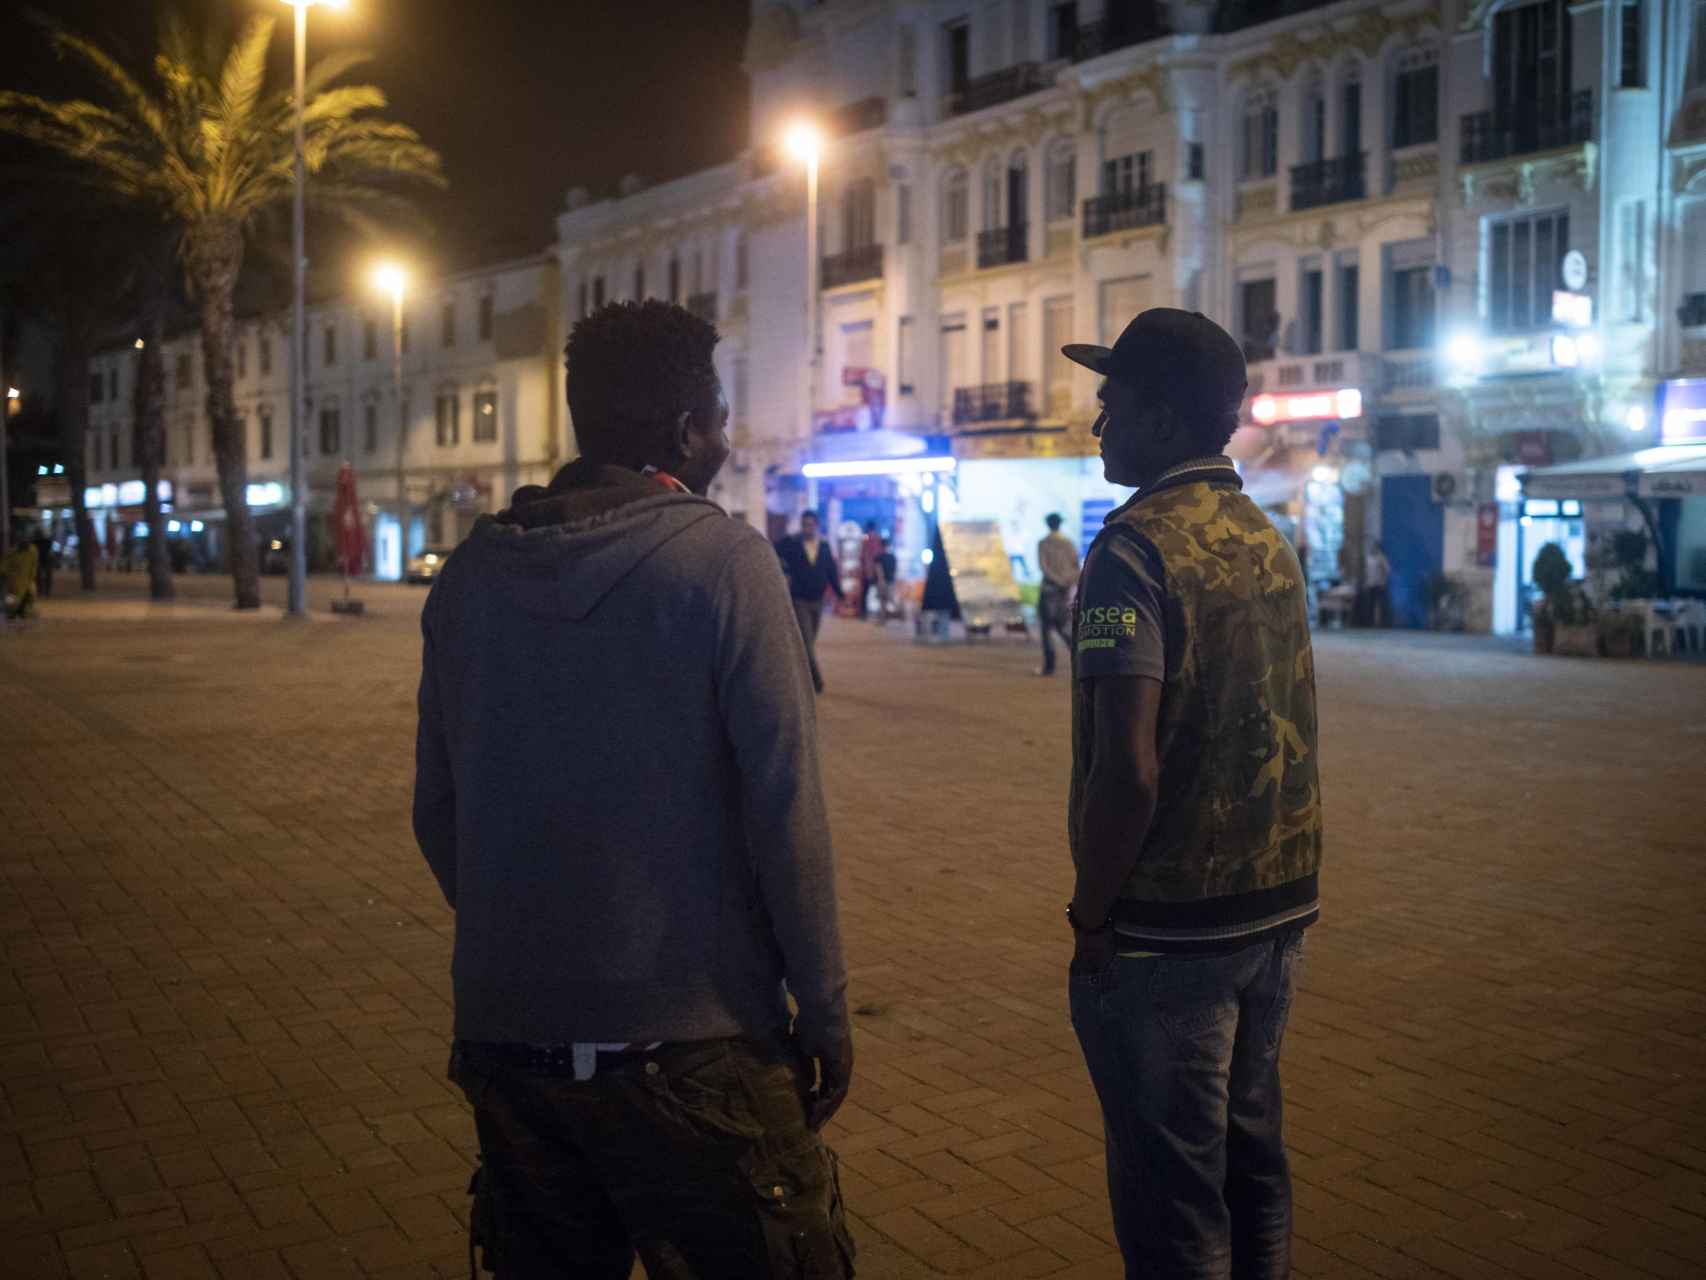 Philemon (i) y Michel la noche de este miércoles en una zona de bares próxima al puerto de la ciudad de Tánger (Marruecos).